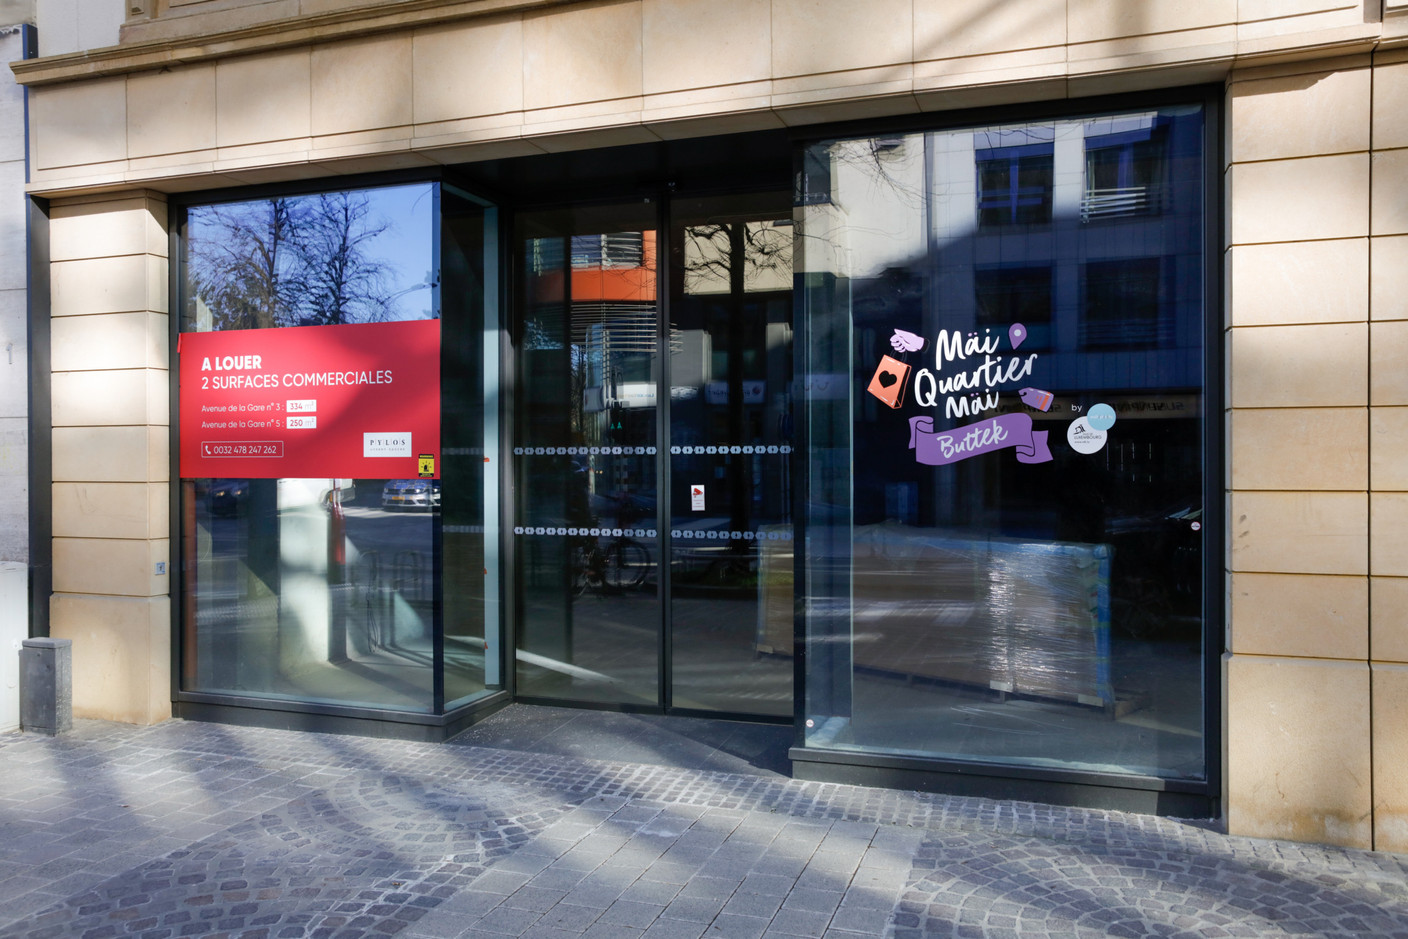 La Ville de Luxembourg tente de donner vie aux cellules vides et en propose certaines à la location sous le concept de pop-up store. (Photo: Romain Gamba / Maison Moderne)